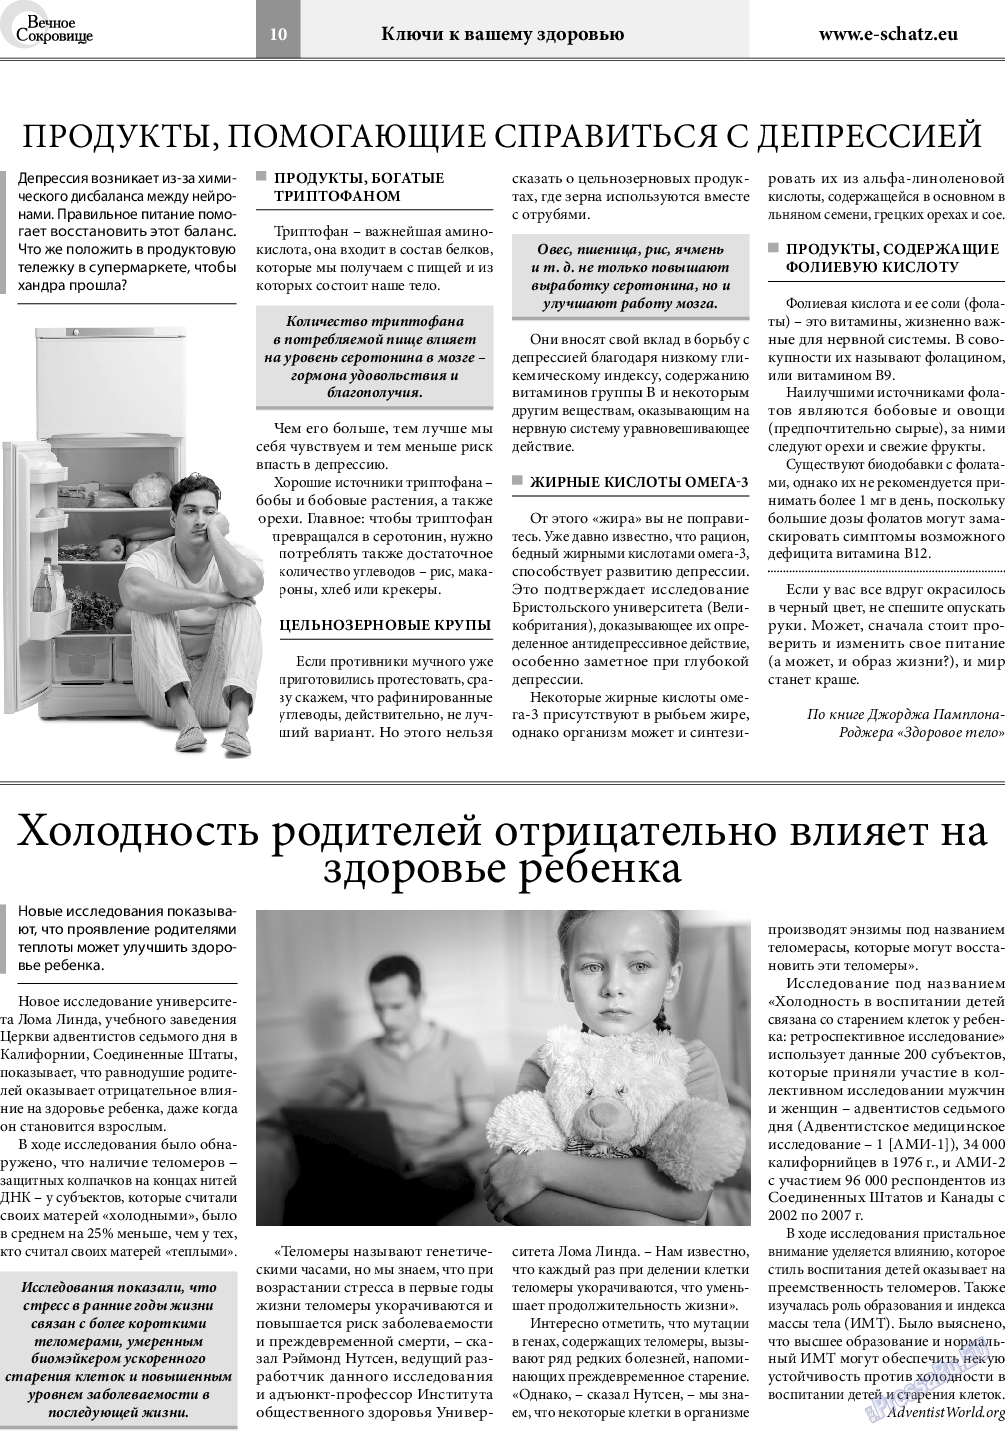 Вечное сокровище, газета. 2019 №5 стр.10